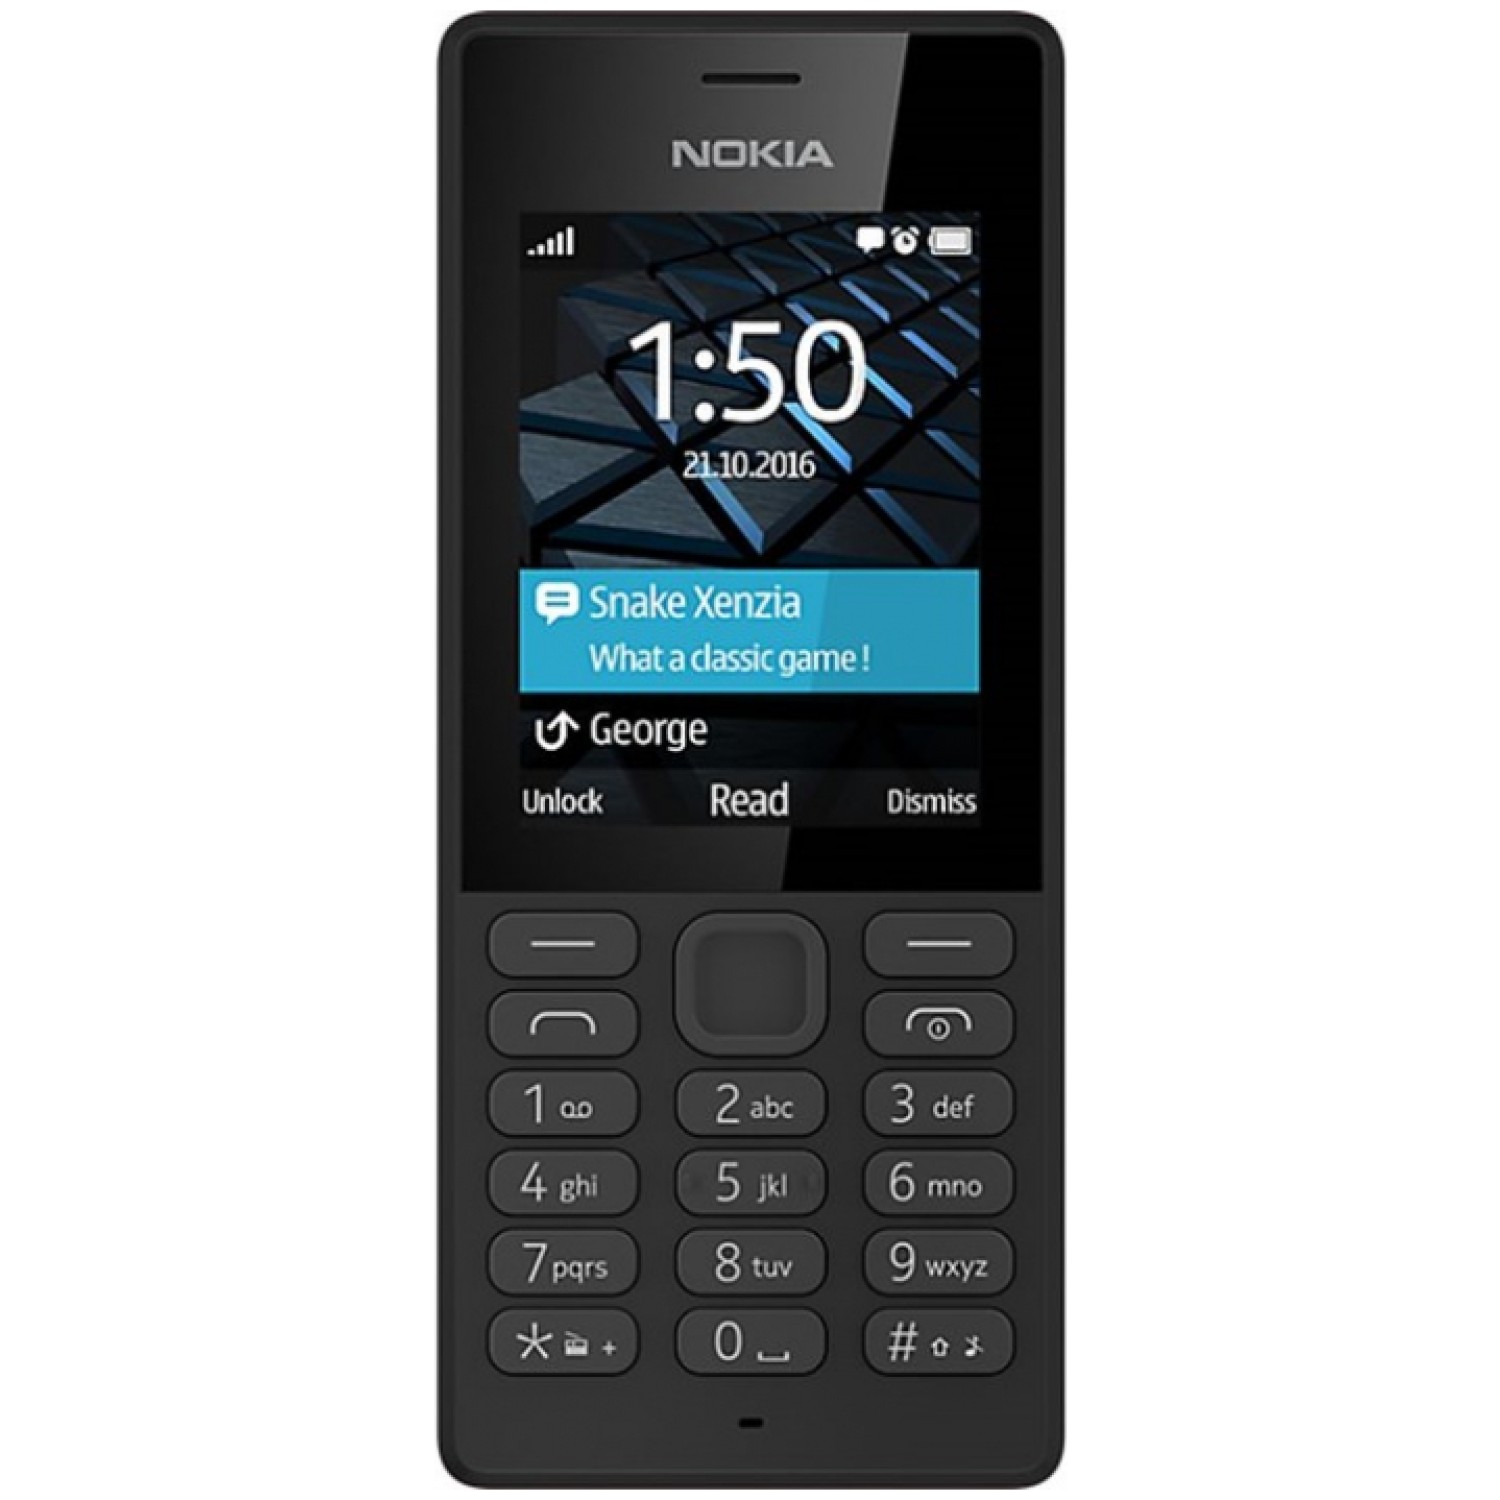 Nokia telefon 150 Dual Sim